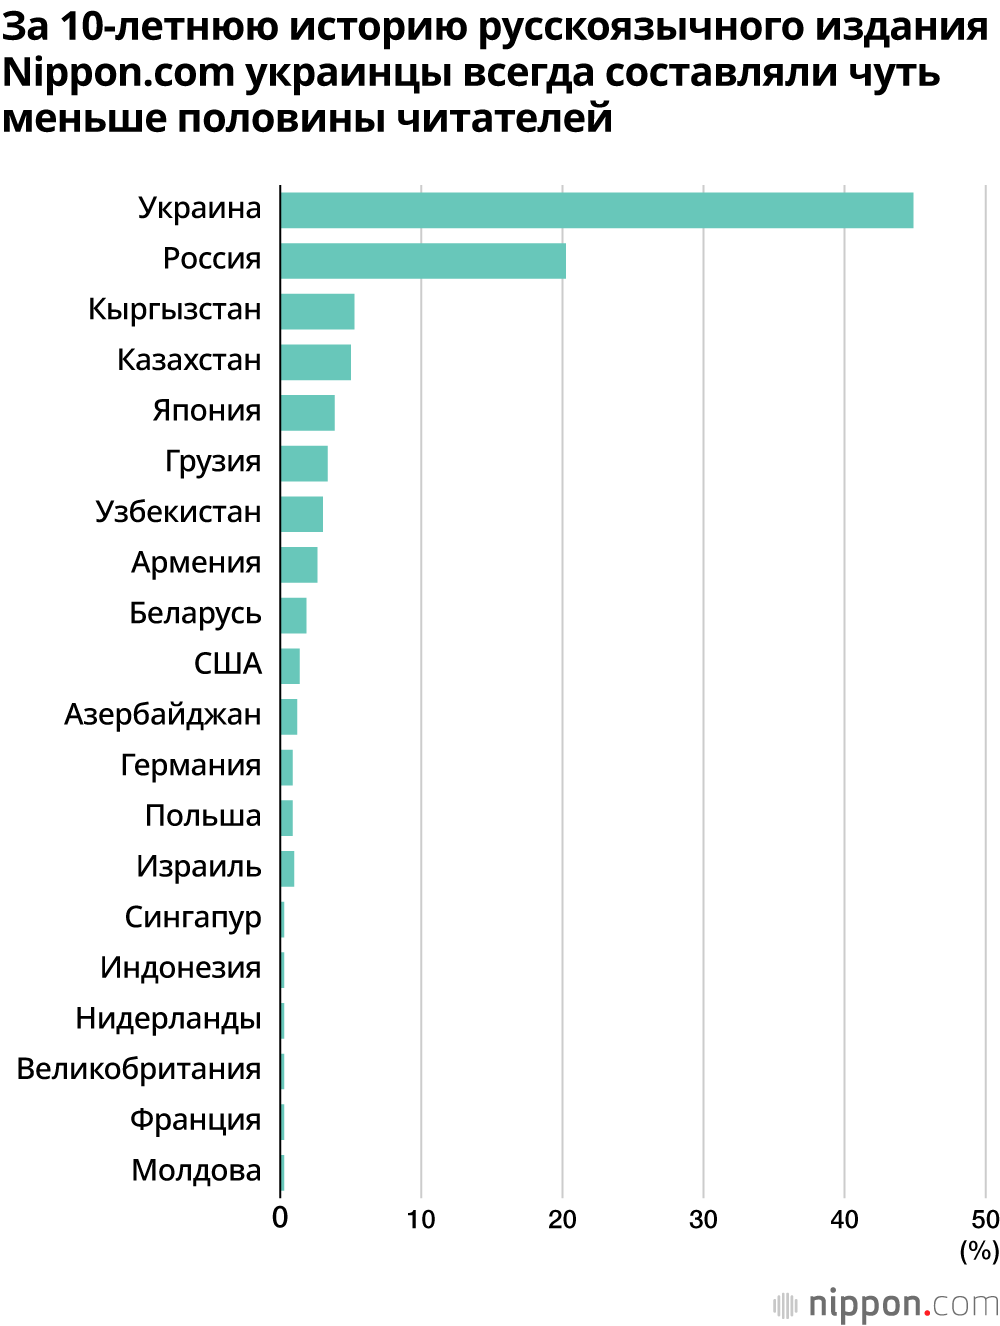 За 10-летнюю историю русскоязычного издания Nippon.com украинцы всегда составляли чуть меньше половины читателей